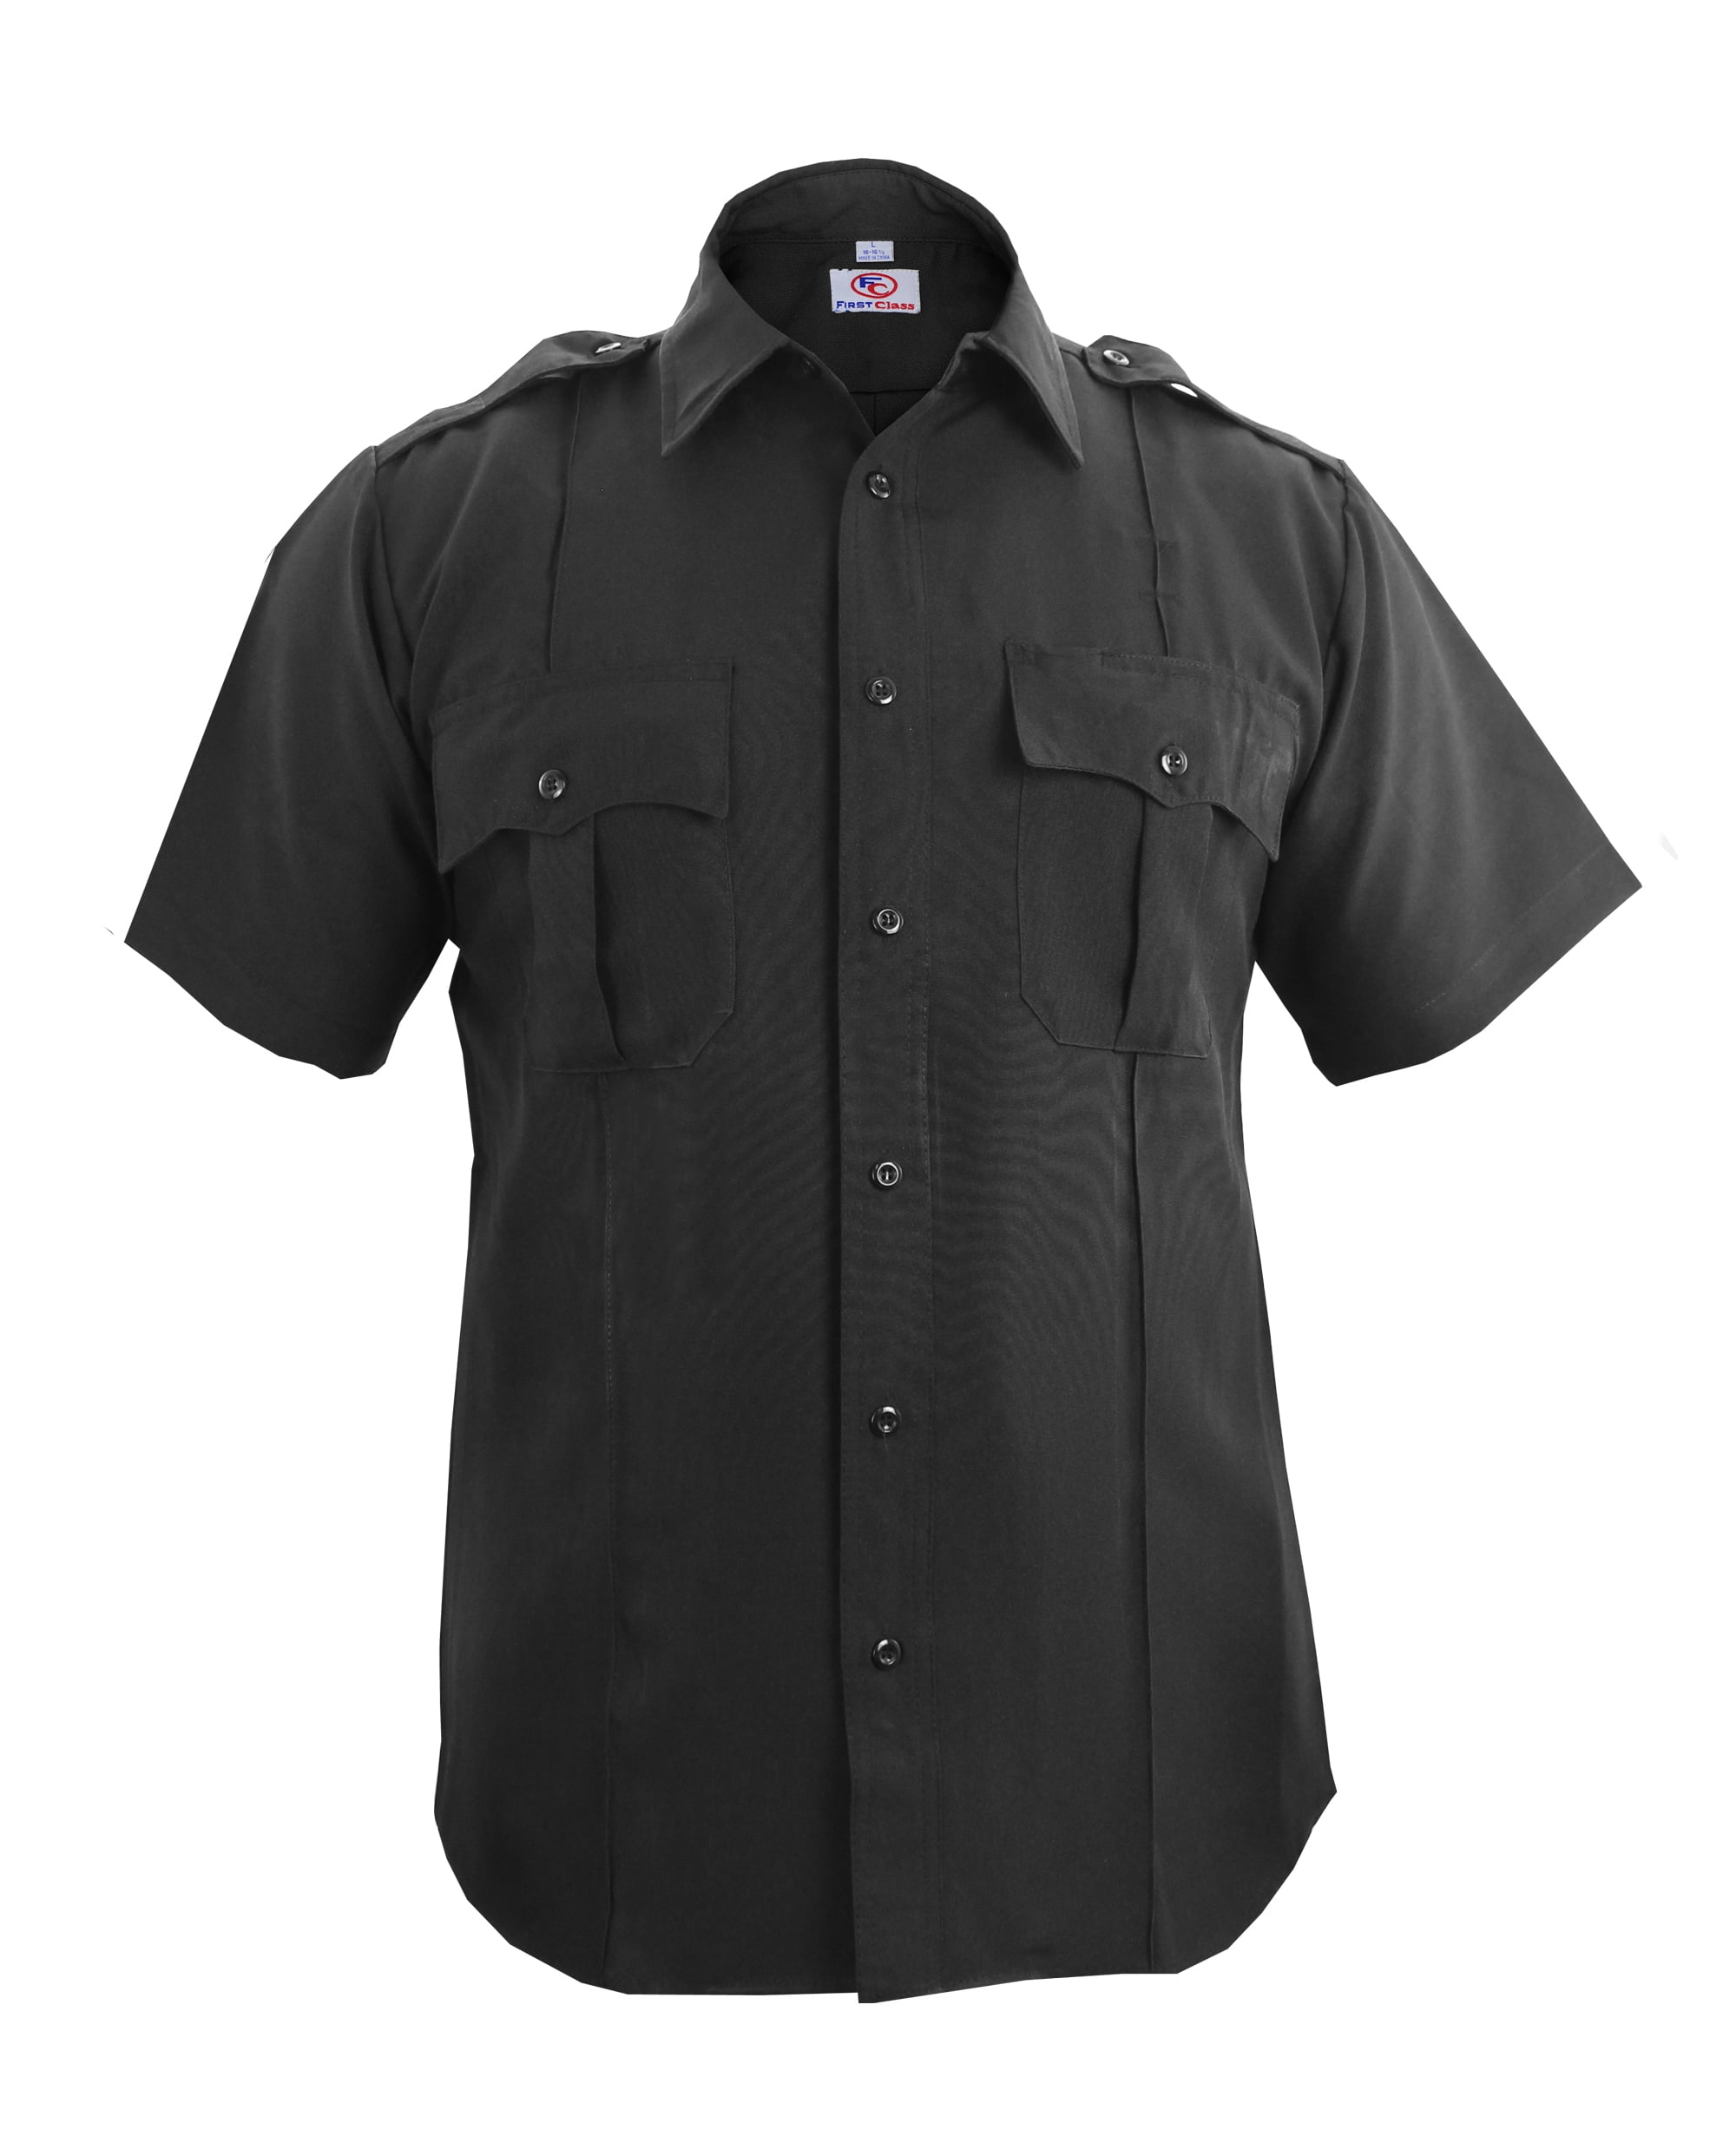 Black First Class 100% Polyester Short Sleeve Men's Uniform Shirt 